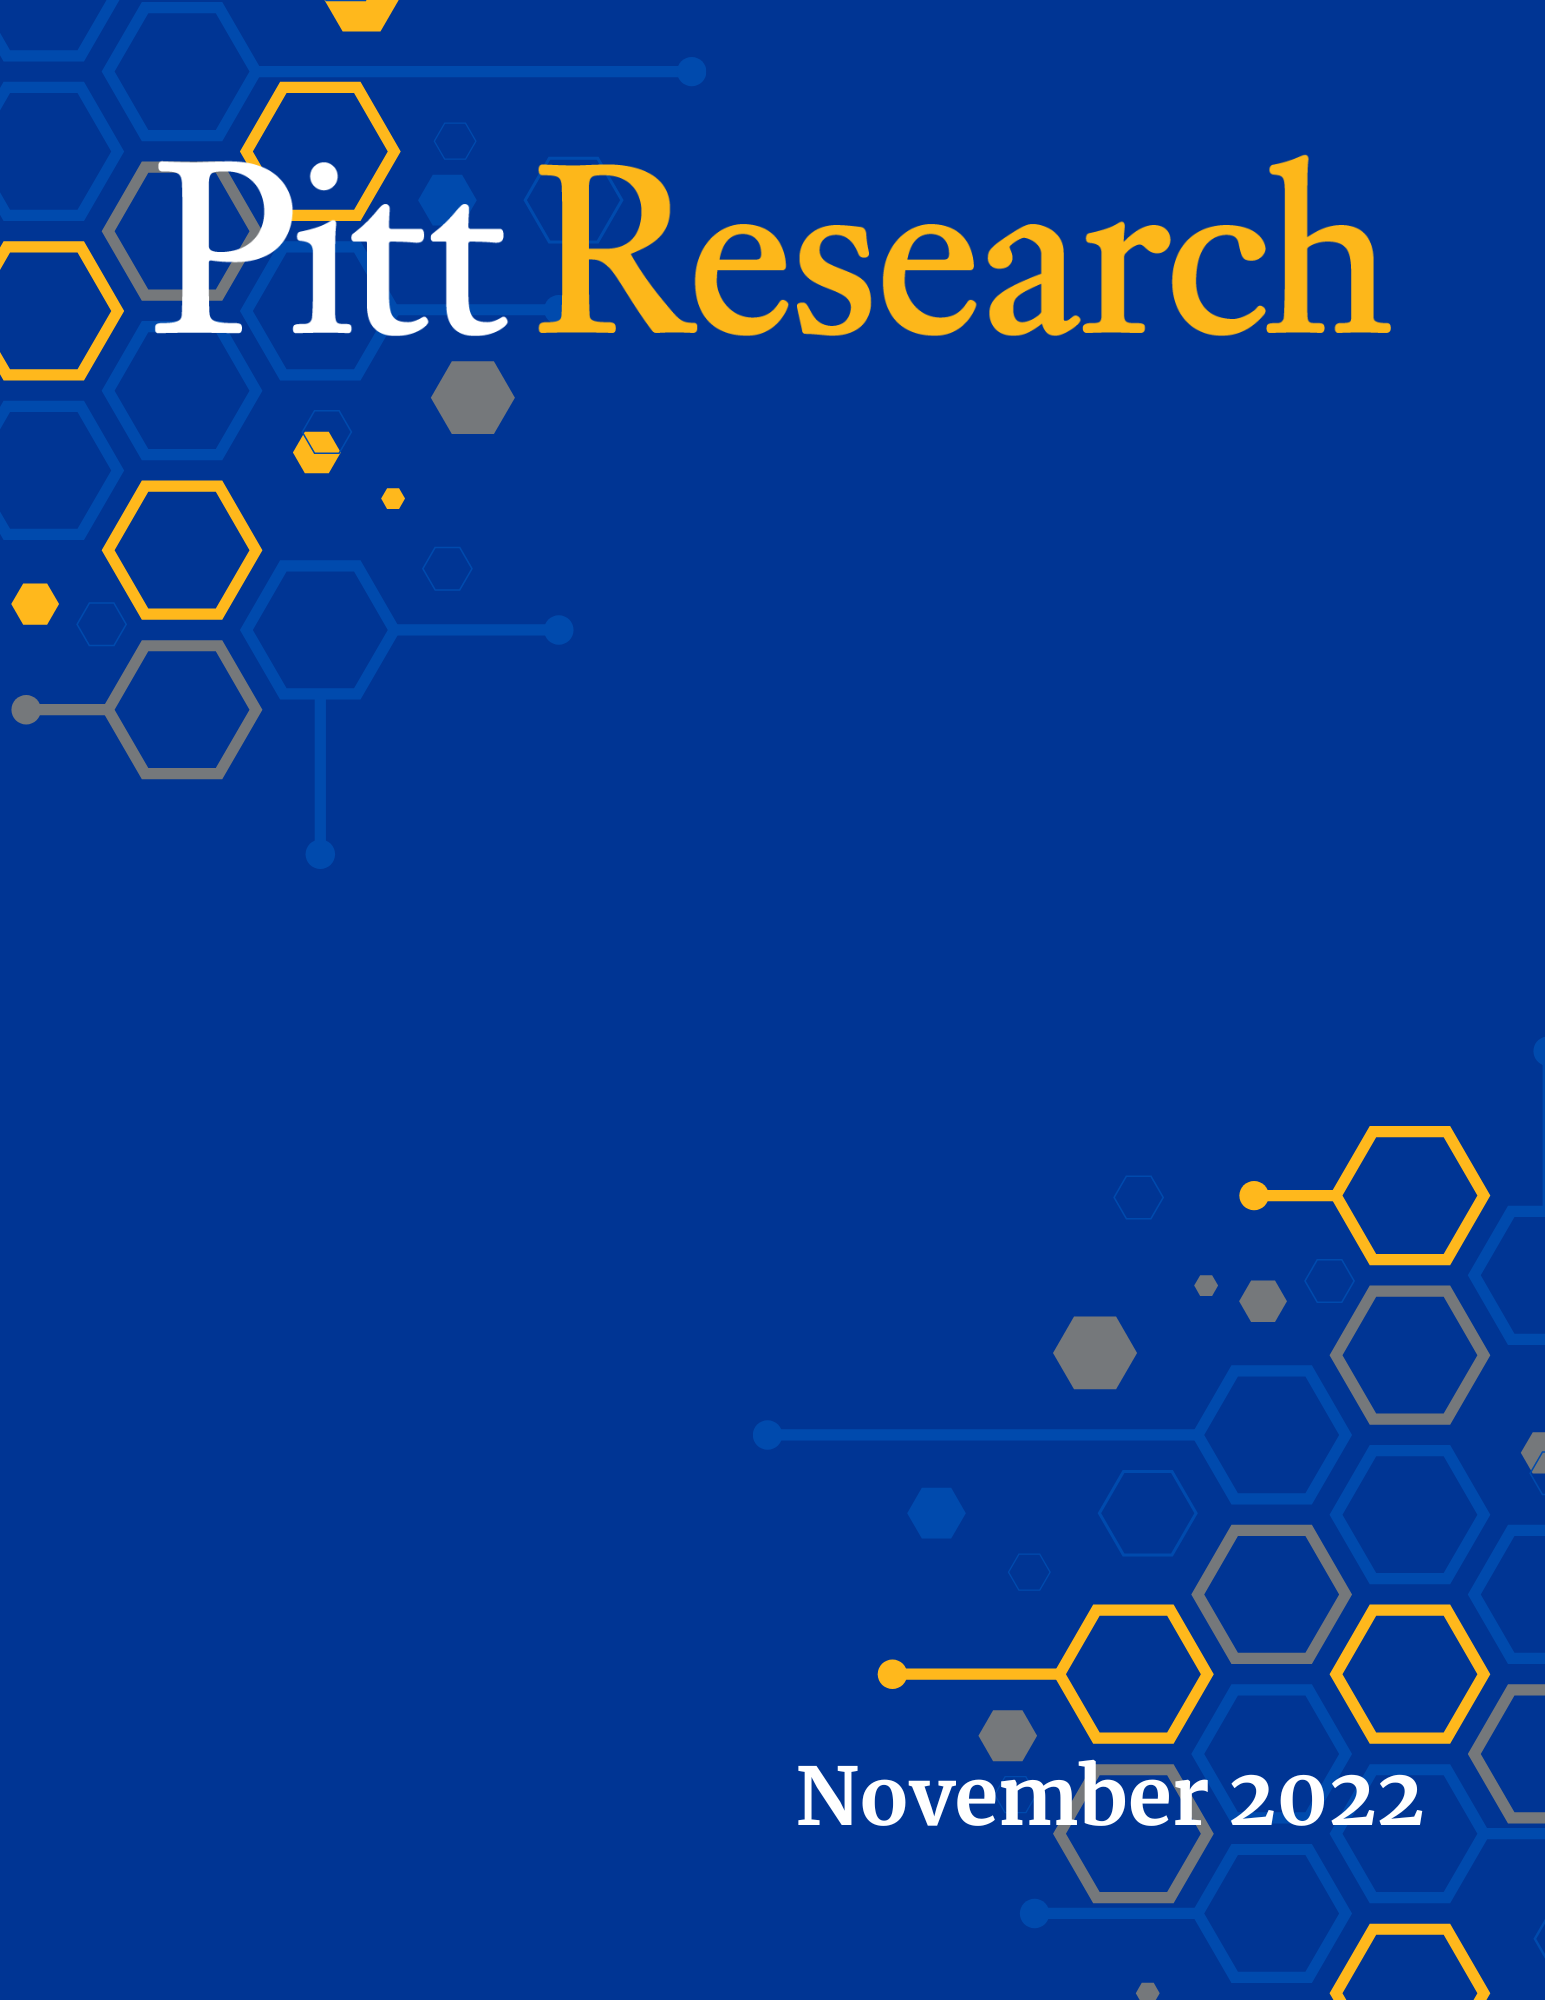 Pitt Research Newsletter for November 2022